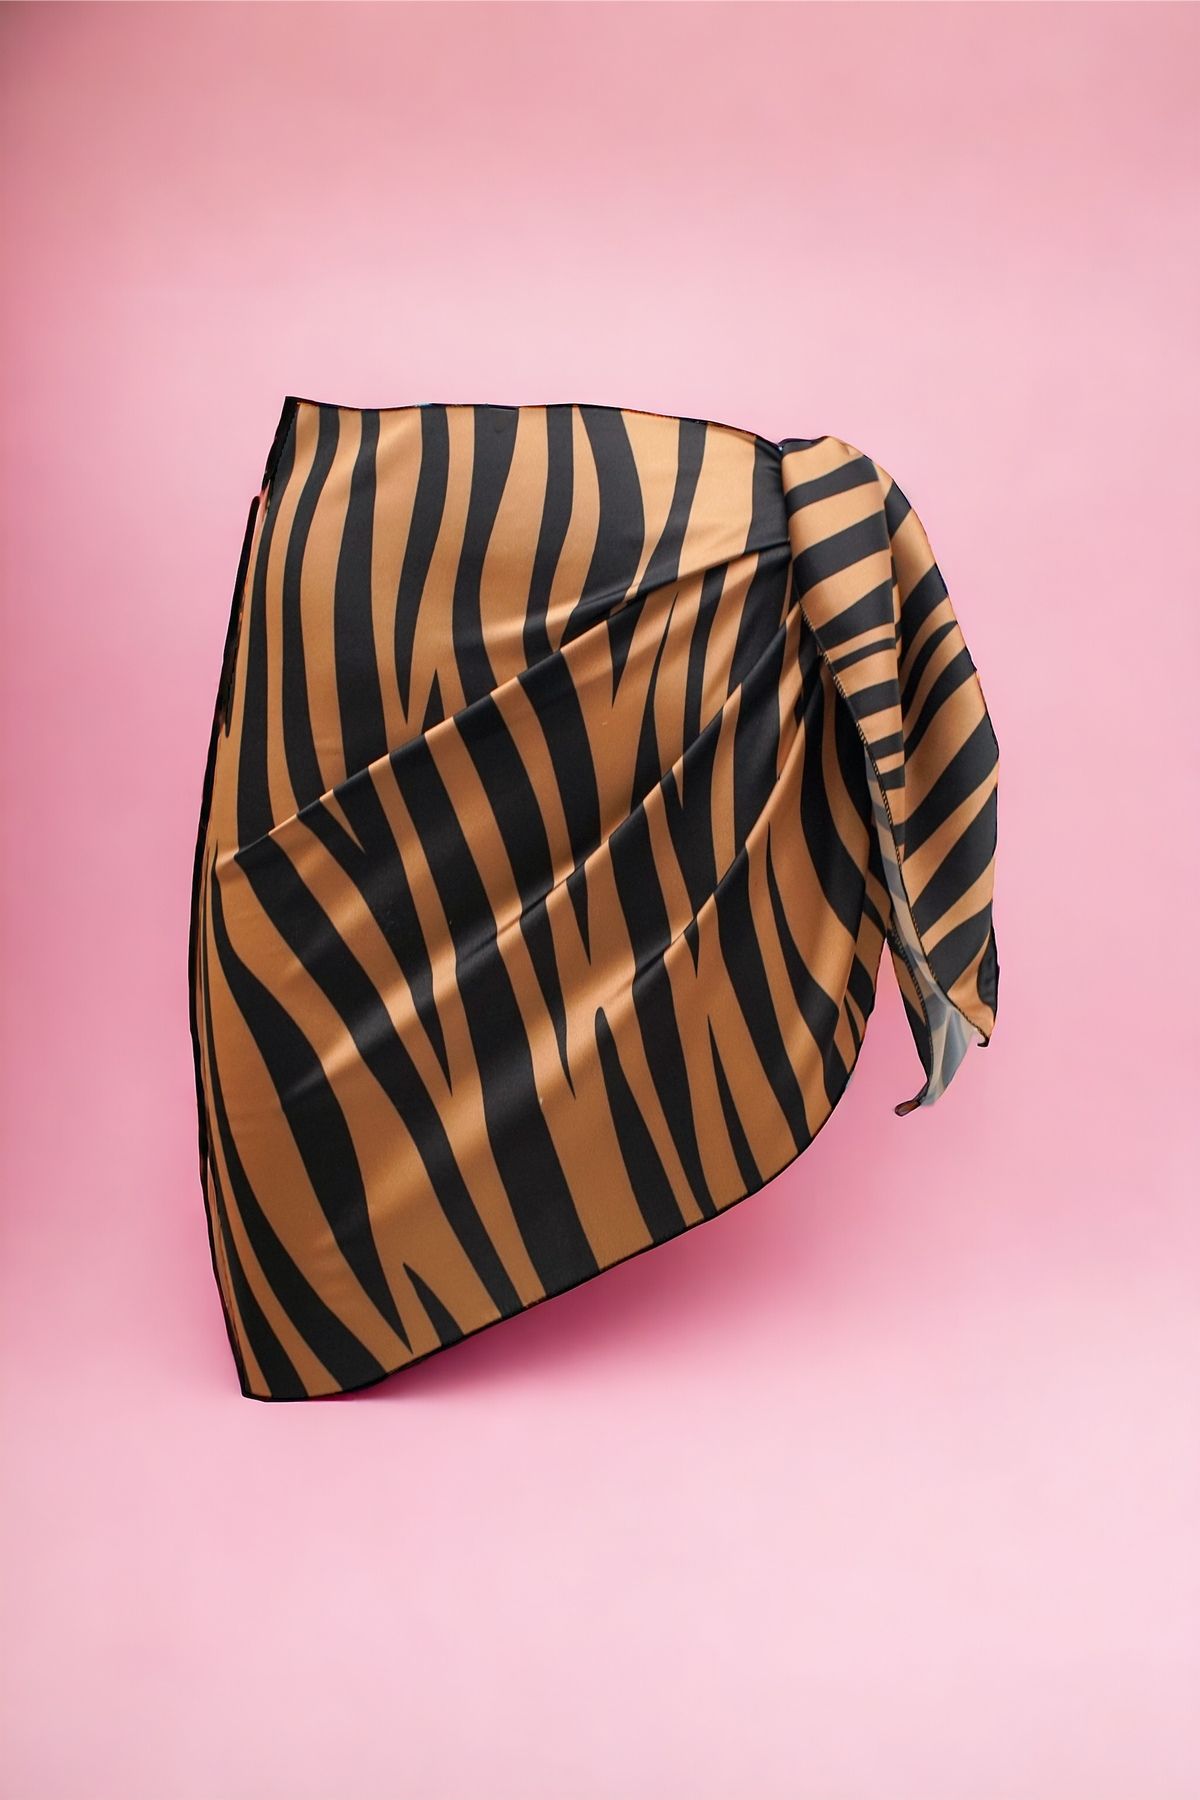 pistore Bakır Zebra Desenli Kısa Pareo Saten Kadın Plaj Elbisesi Yeni Sezon